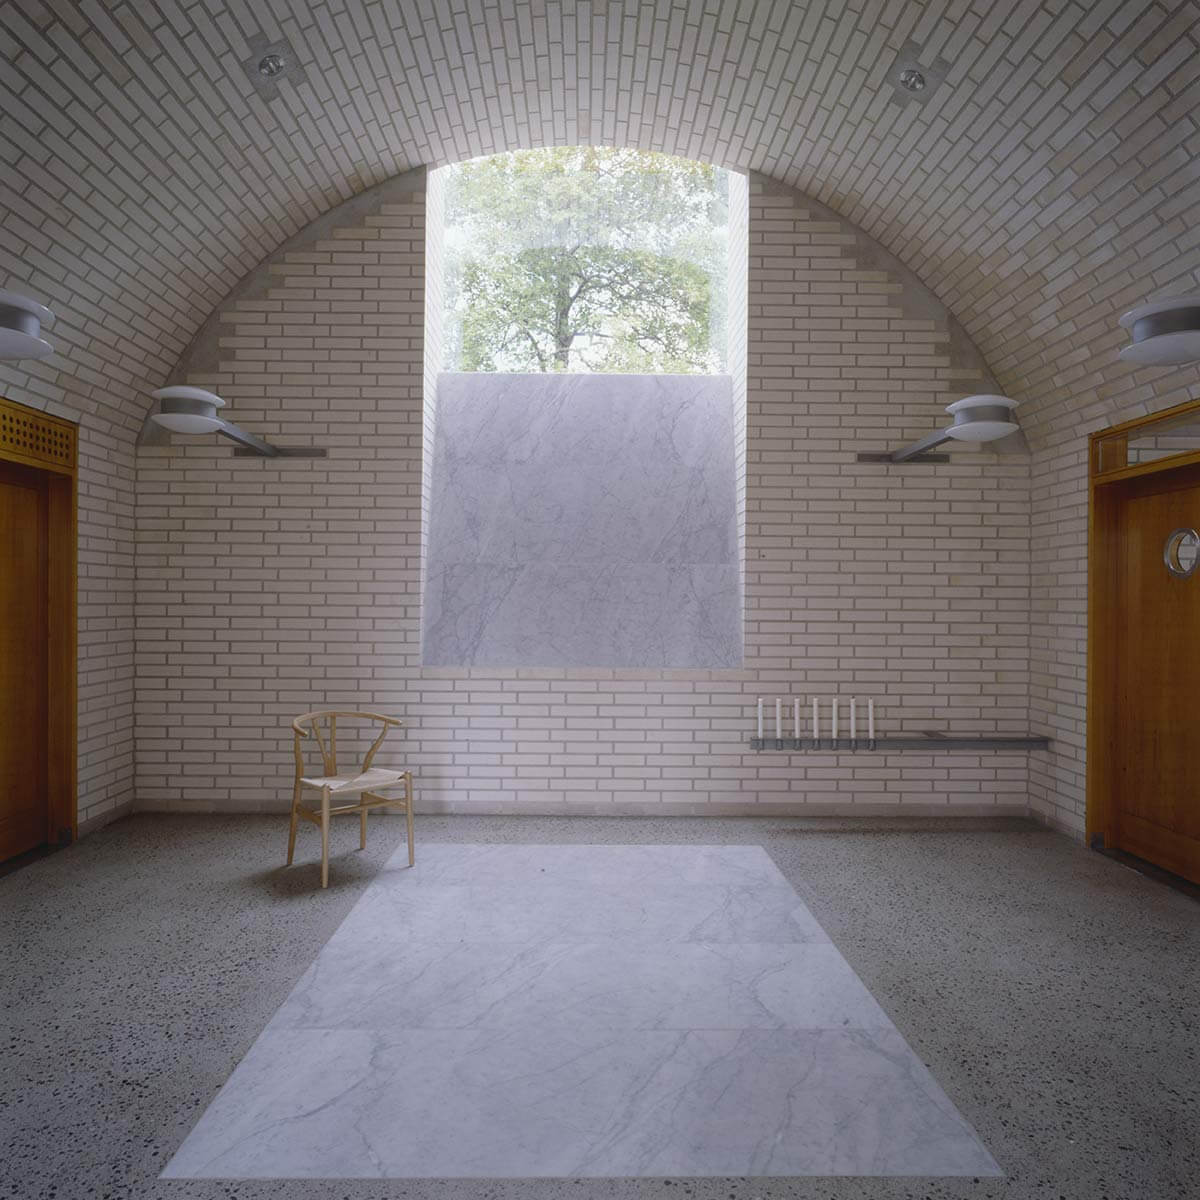 © C-V. Hølmebakk - Mortuary at Asker Crematorium / C-V. Hølmebakk